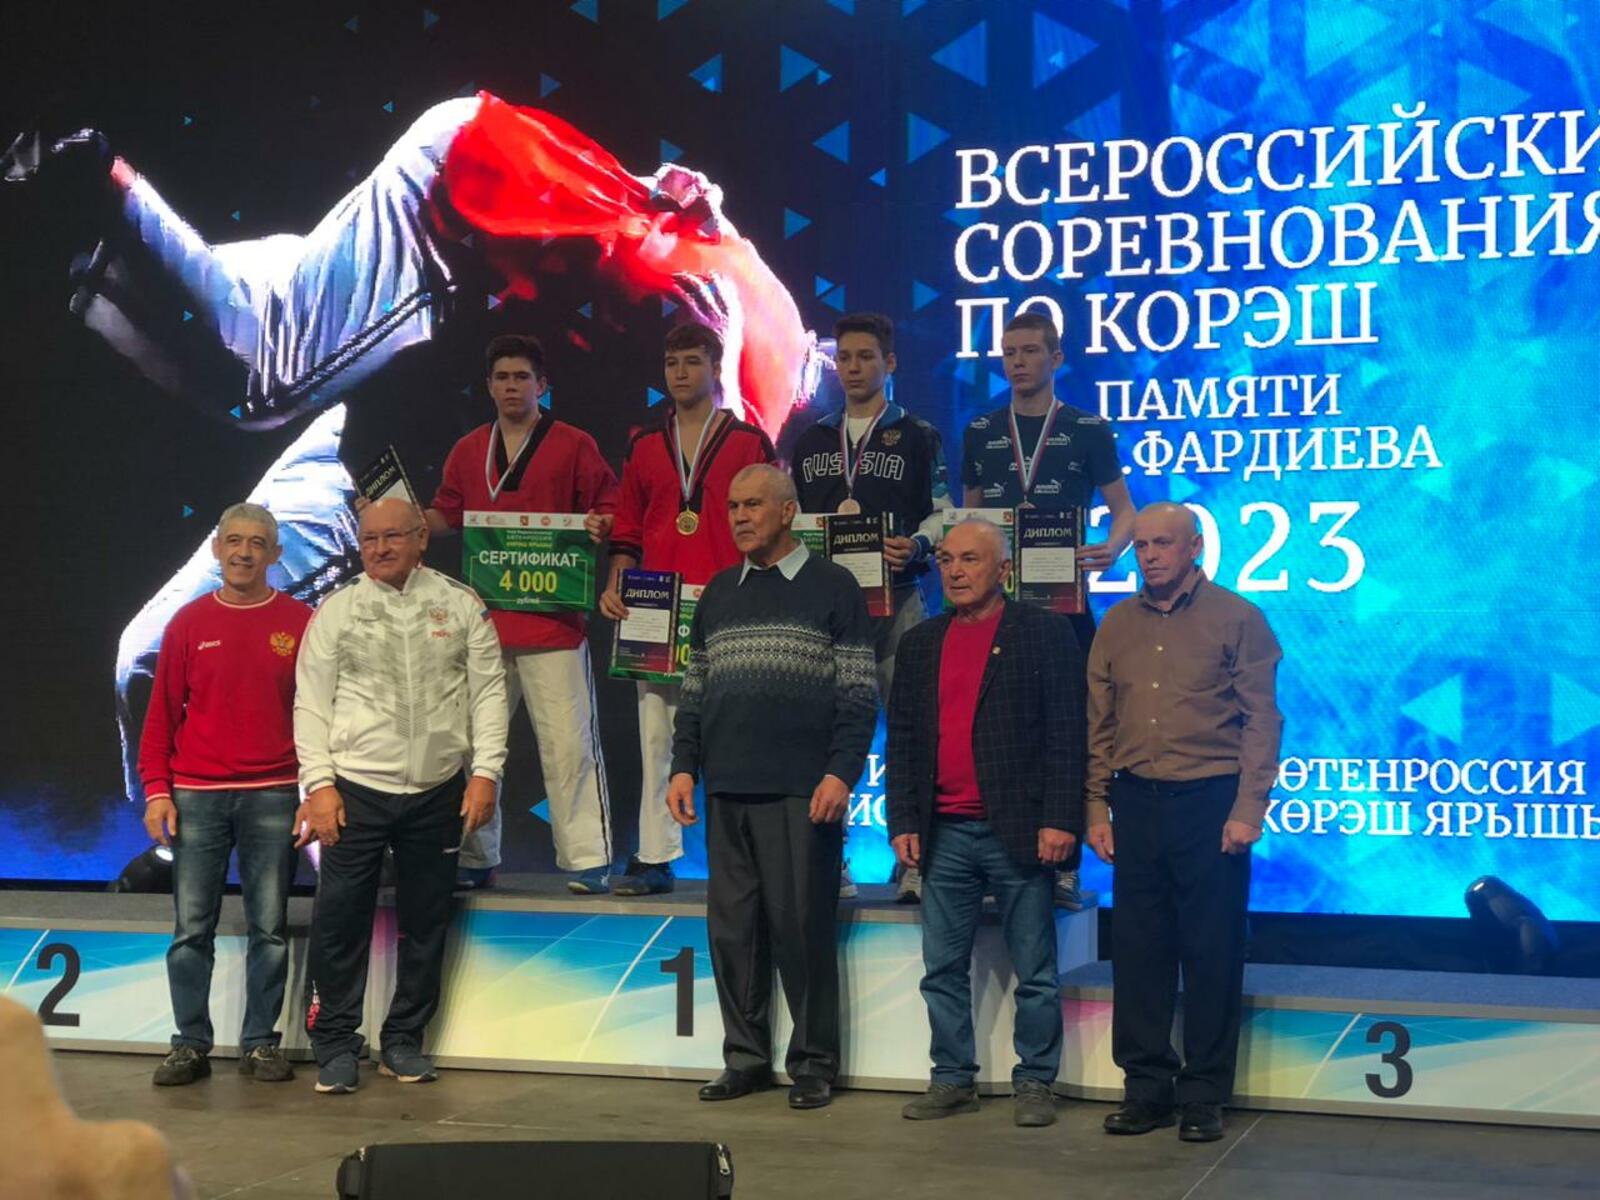 Спортсмены из Давлекановского района Башкортостана стали призерами Всероссийских соревнований по борьбе корэш